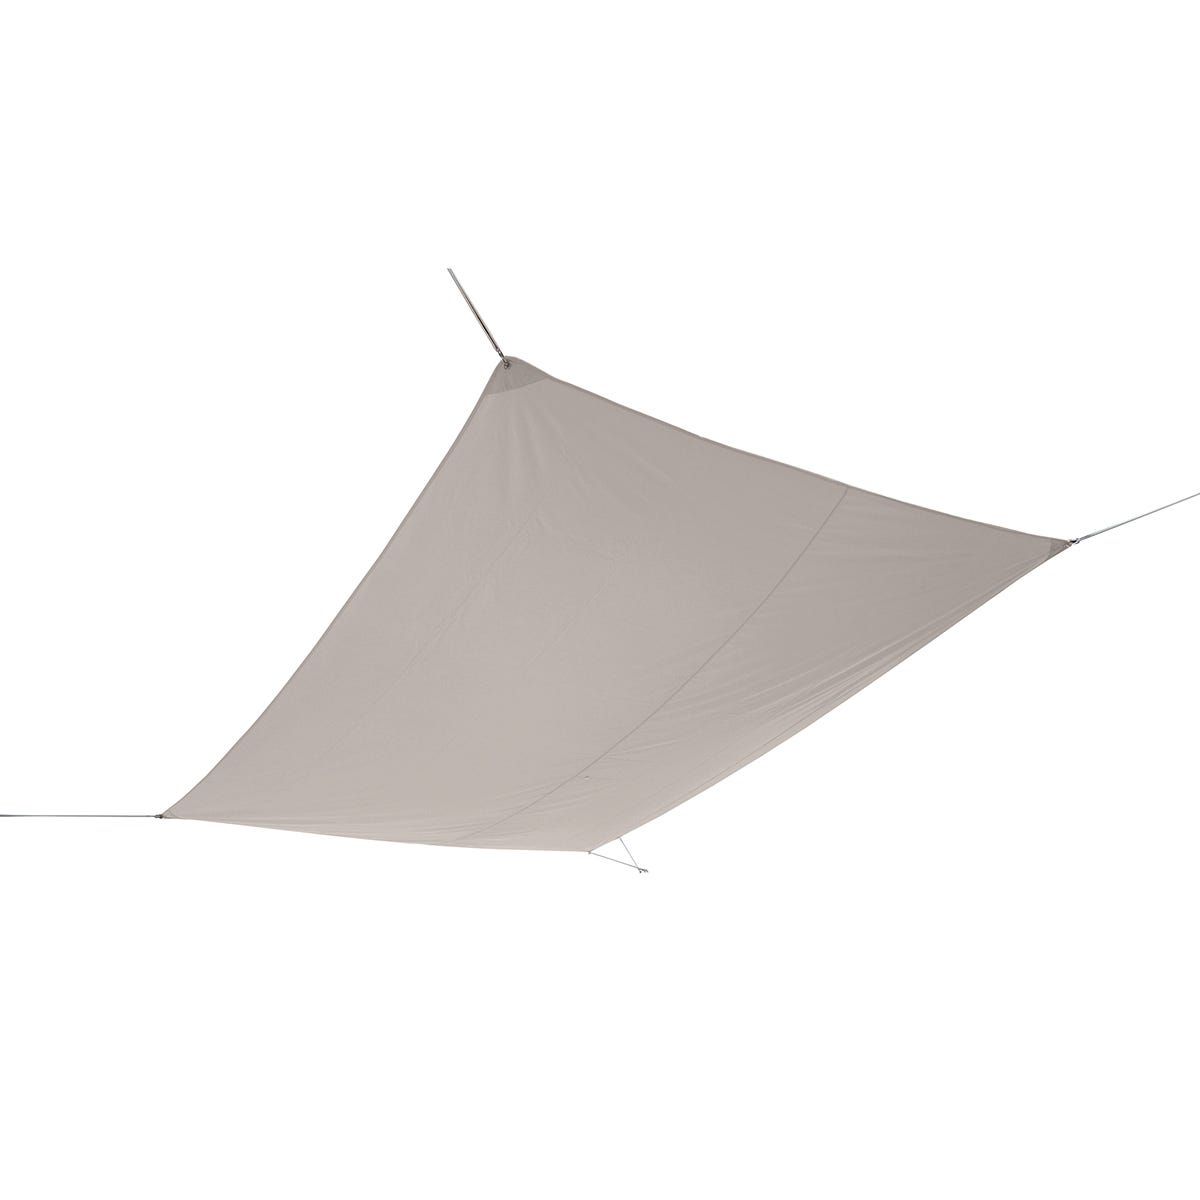 Vela ombreggiante rettangolare marrone 300 x 400 cm